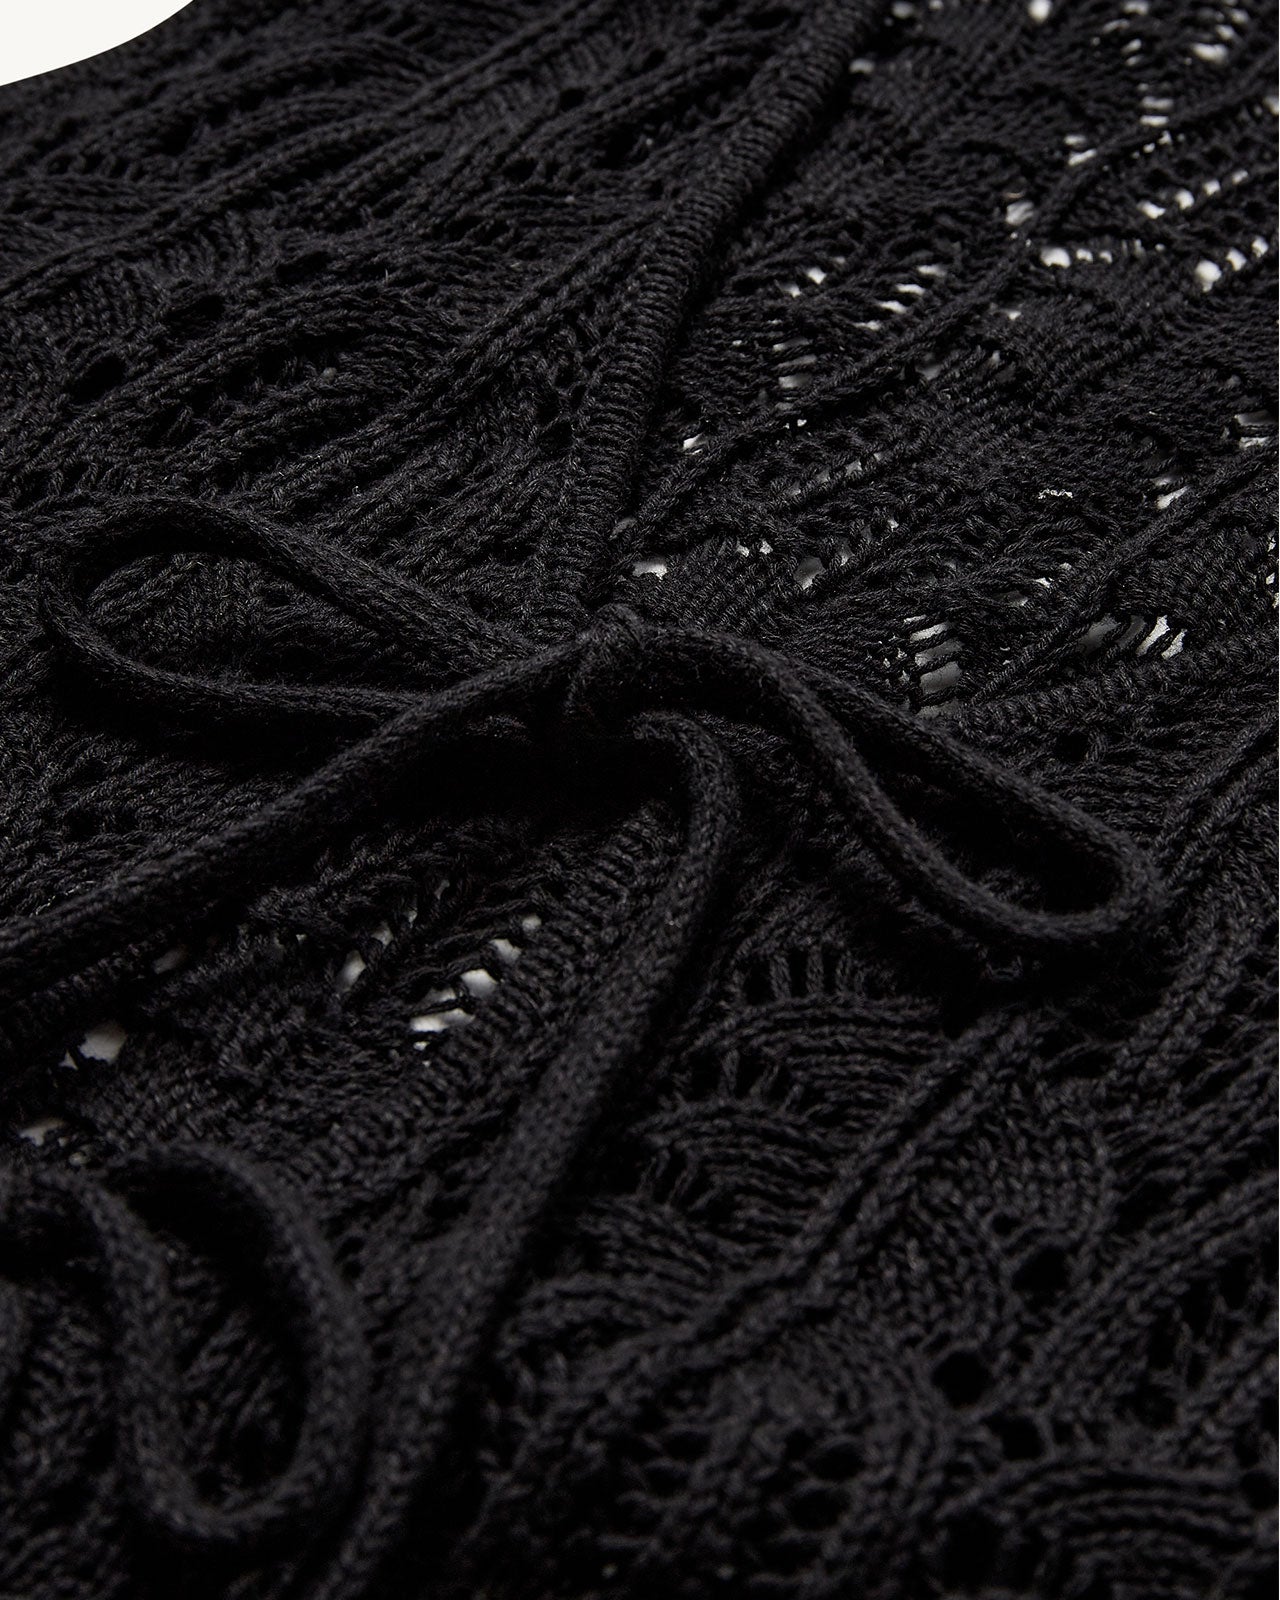 The Garment Egypt Crochet Vest